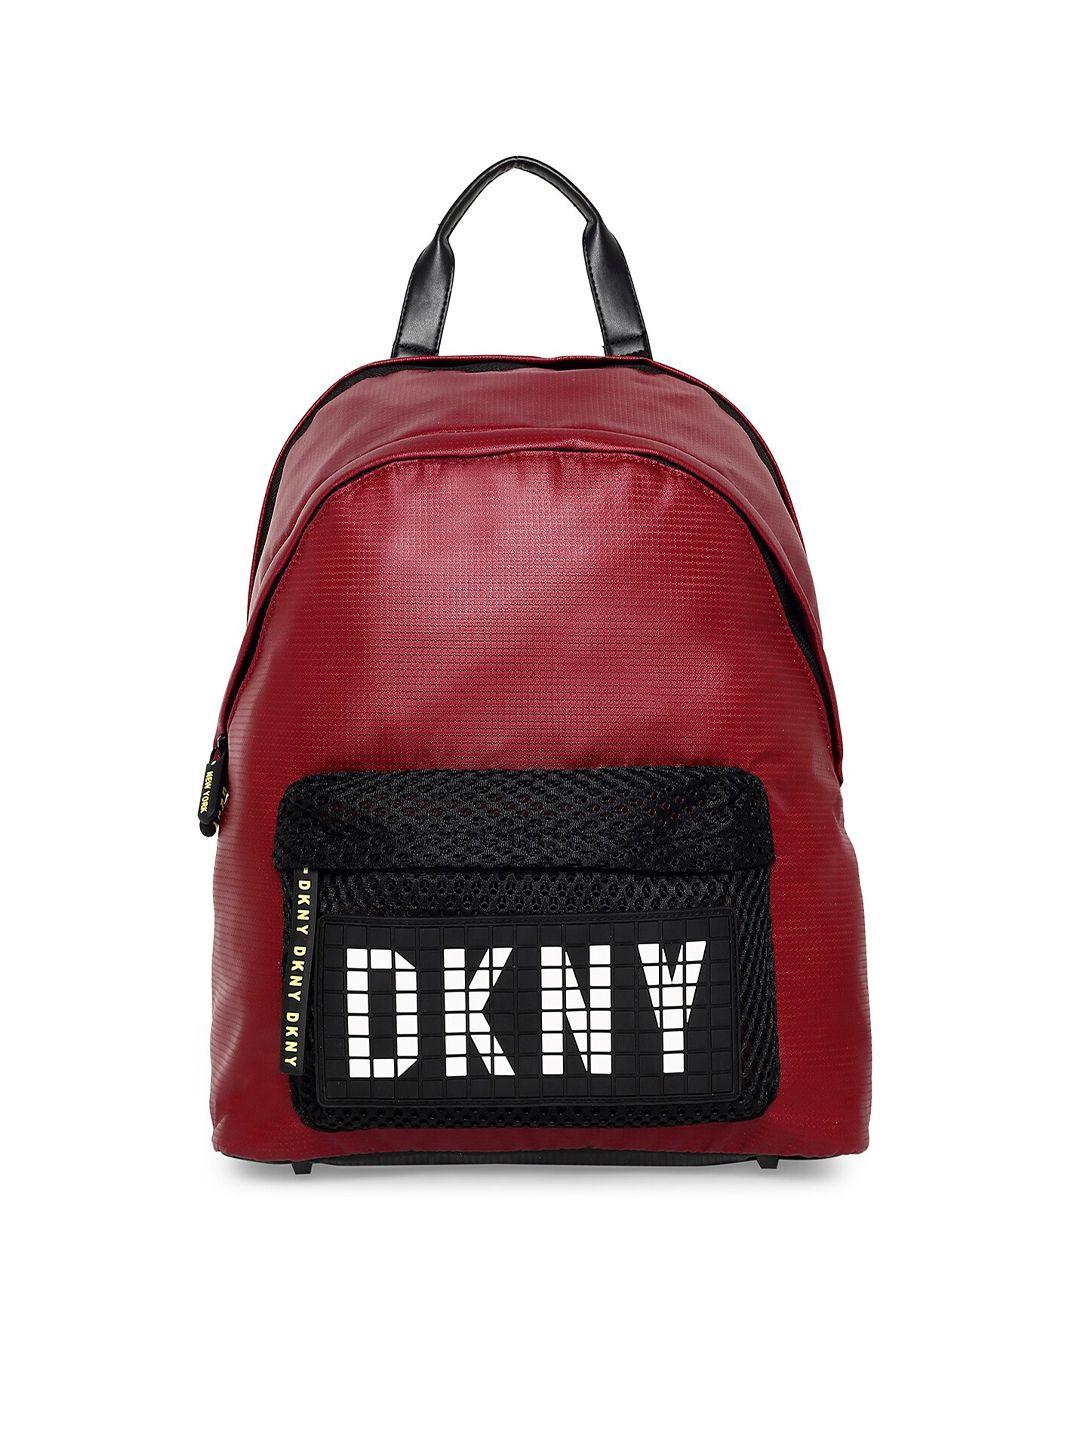 dkny urban exclusive range maroon black contrast detail backpack